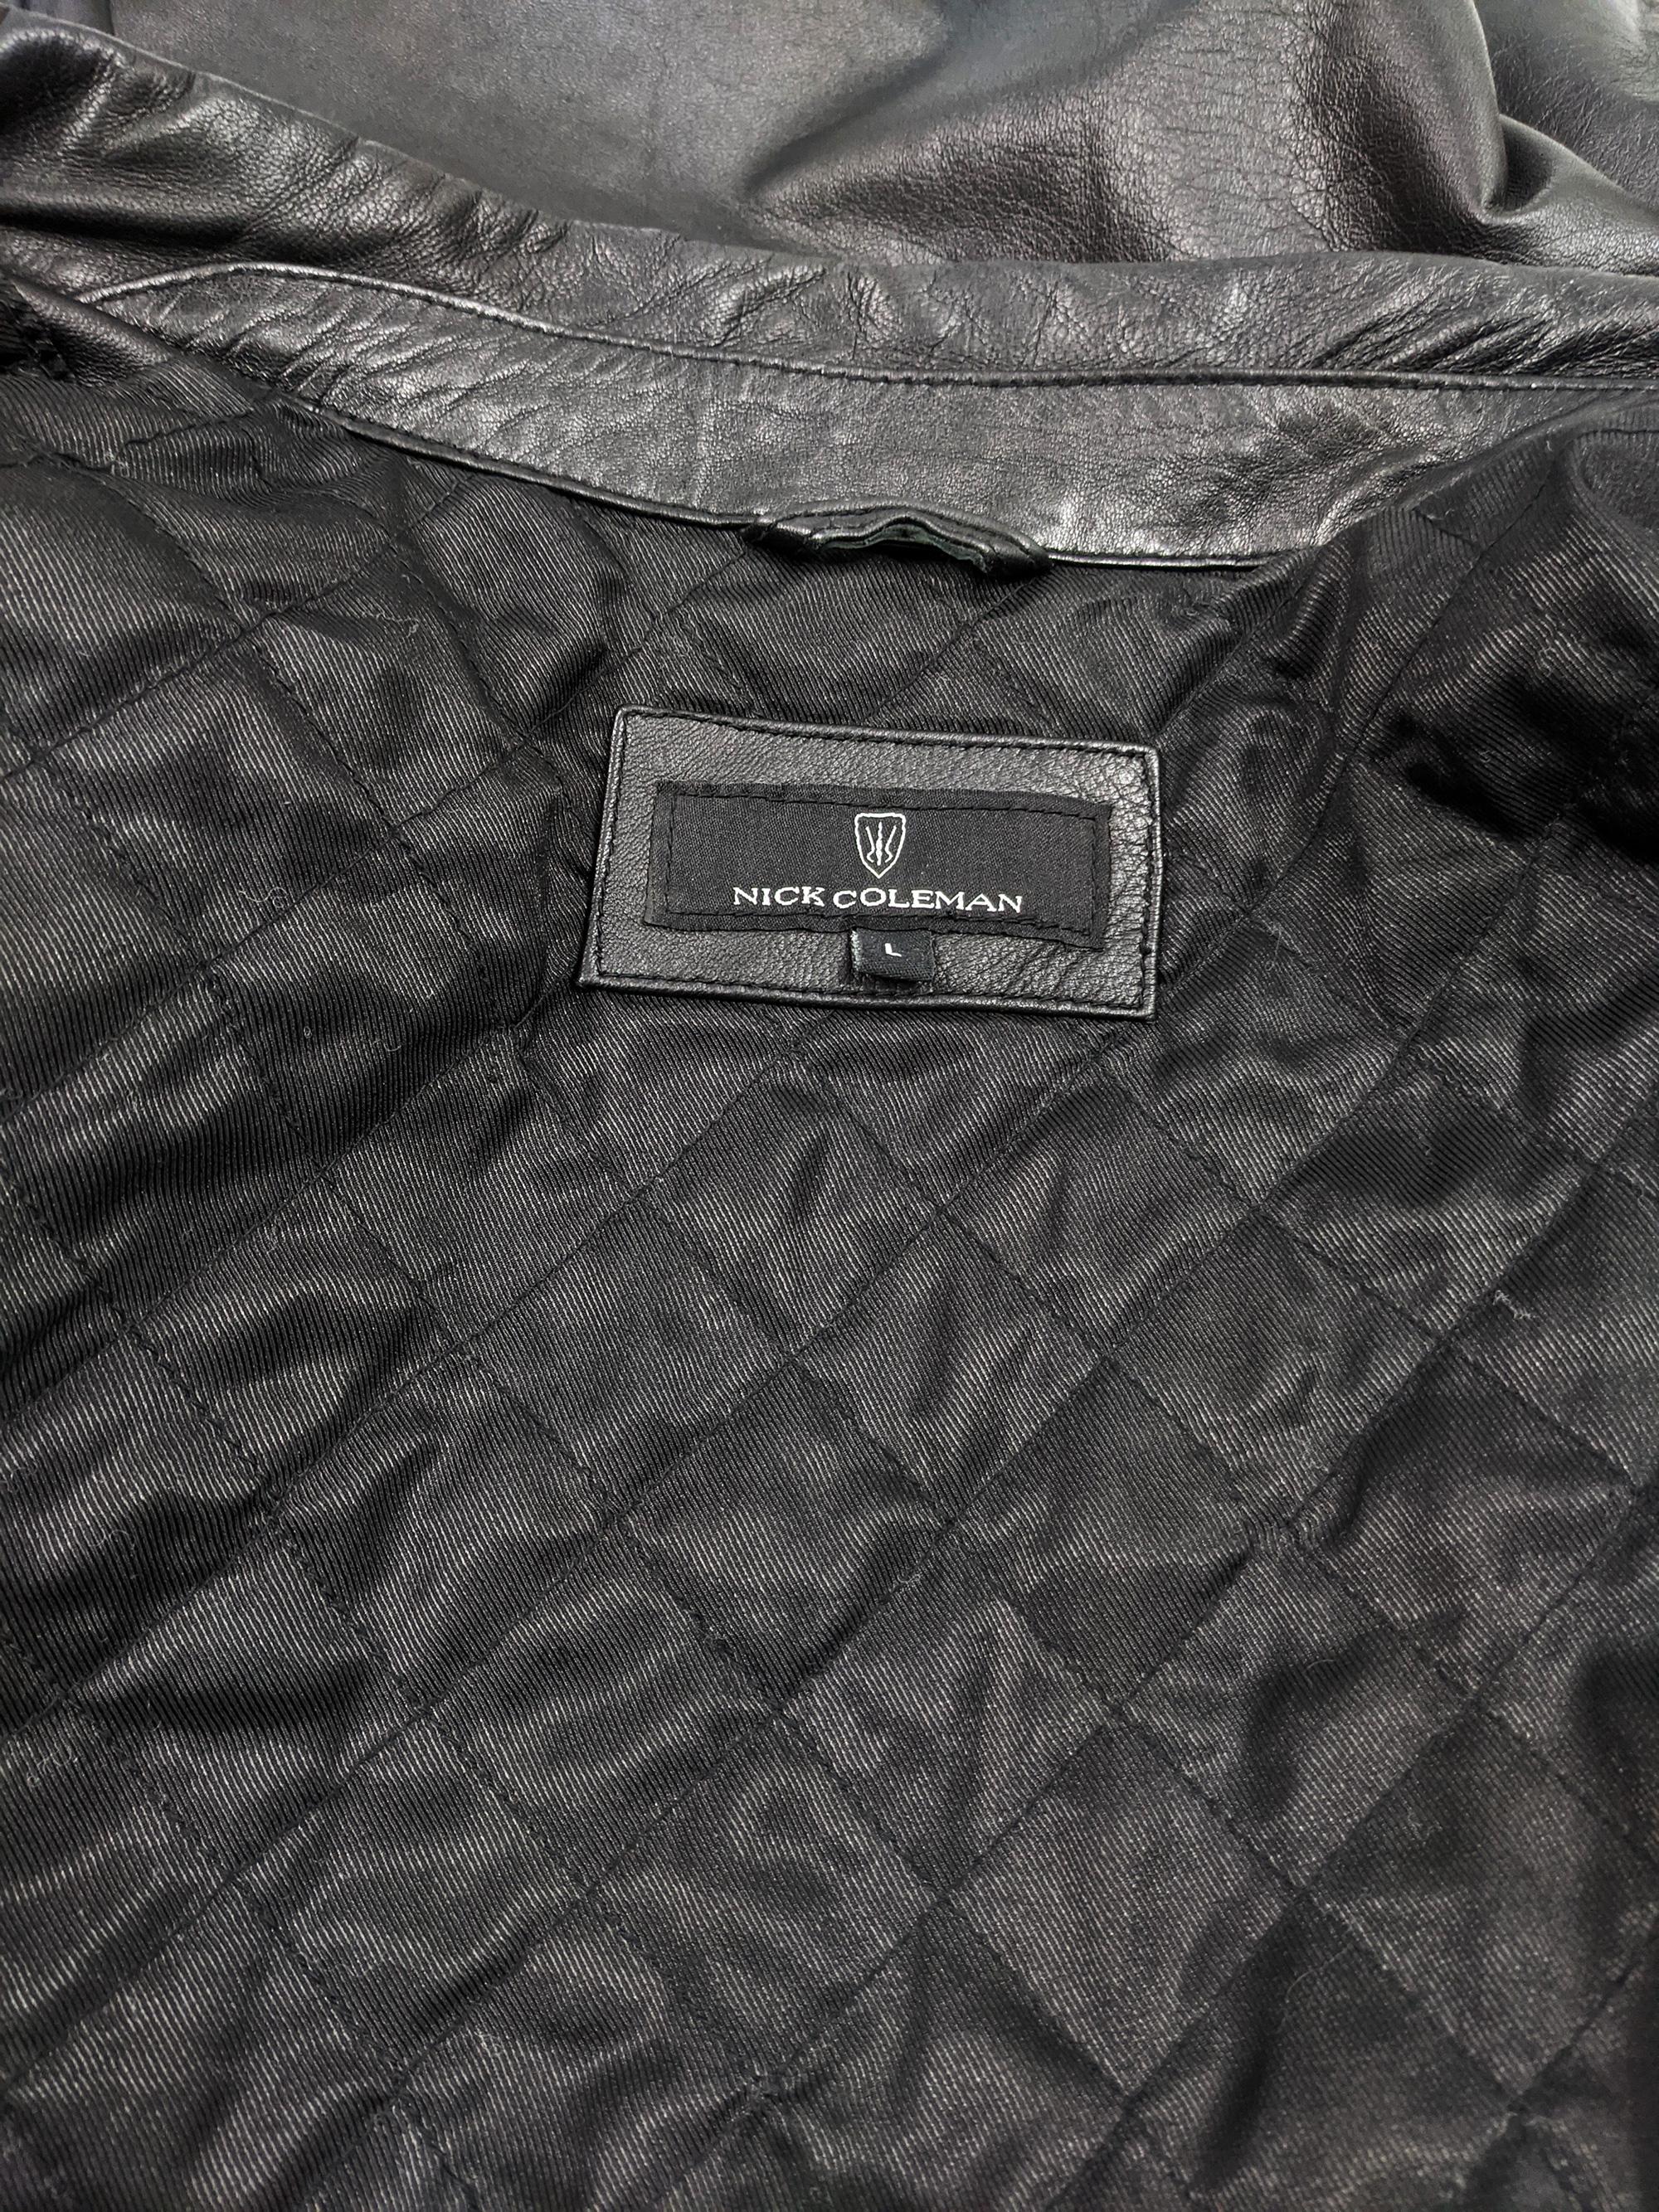 Nick Coleman Mens Vintage Black Leather Jacket 3